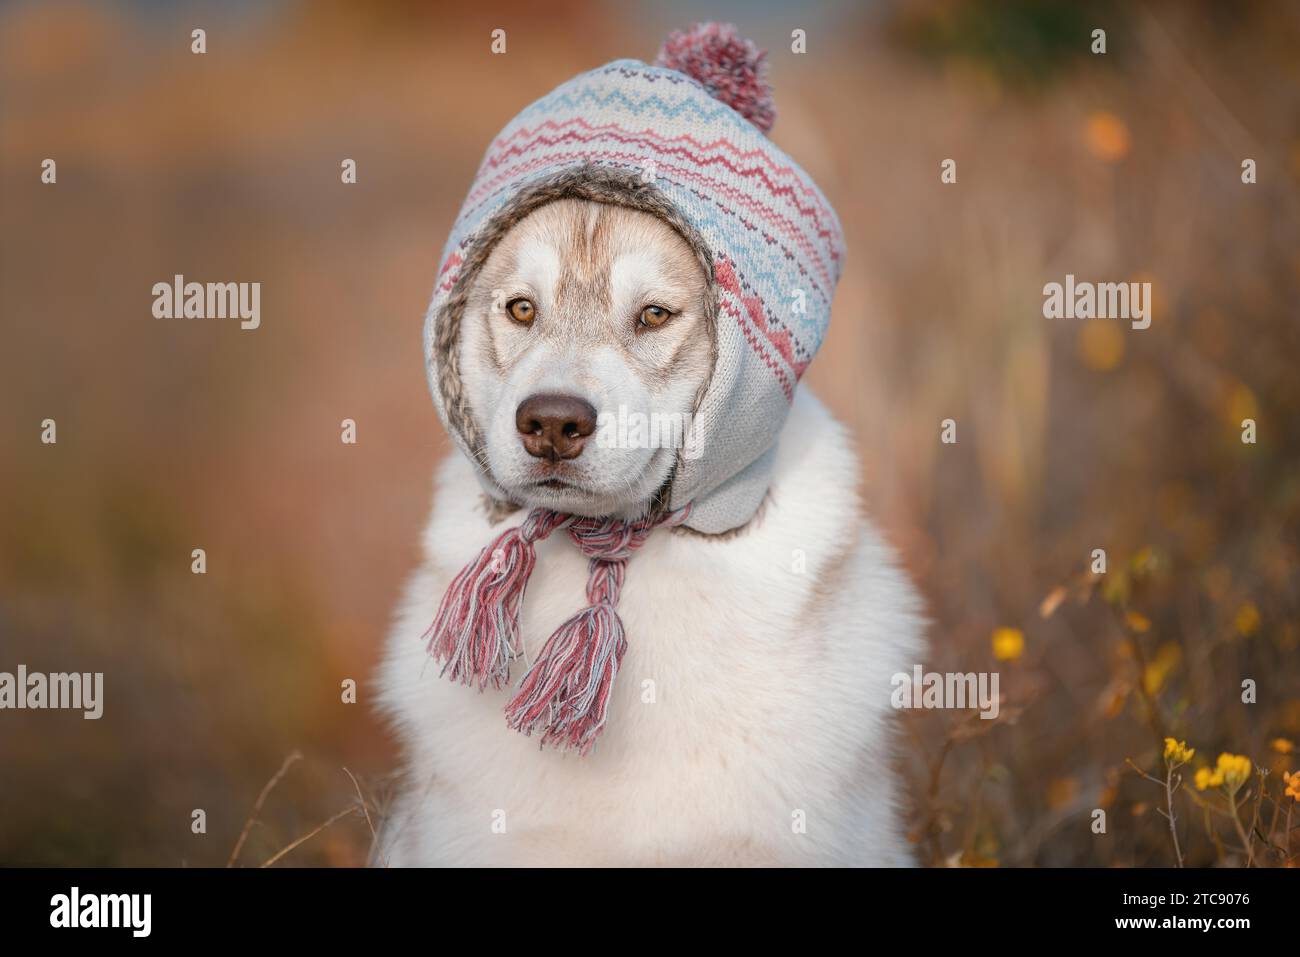 Hund Herbst sibirischer Husky in einem warmen Hut in Herbstfarben Stockfoto